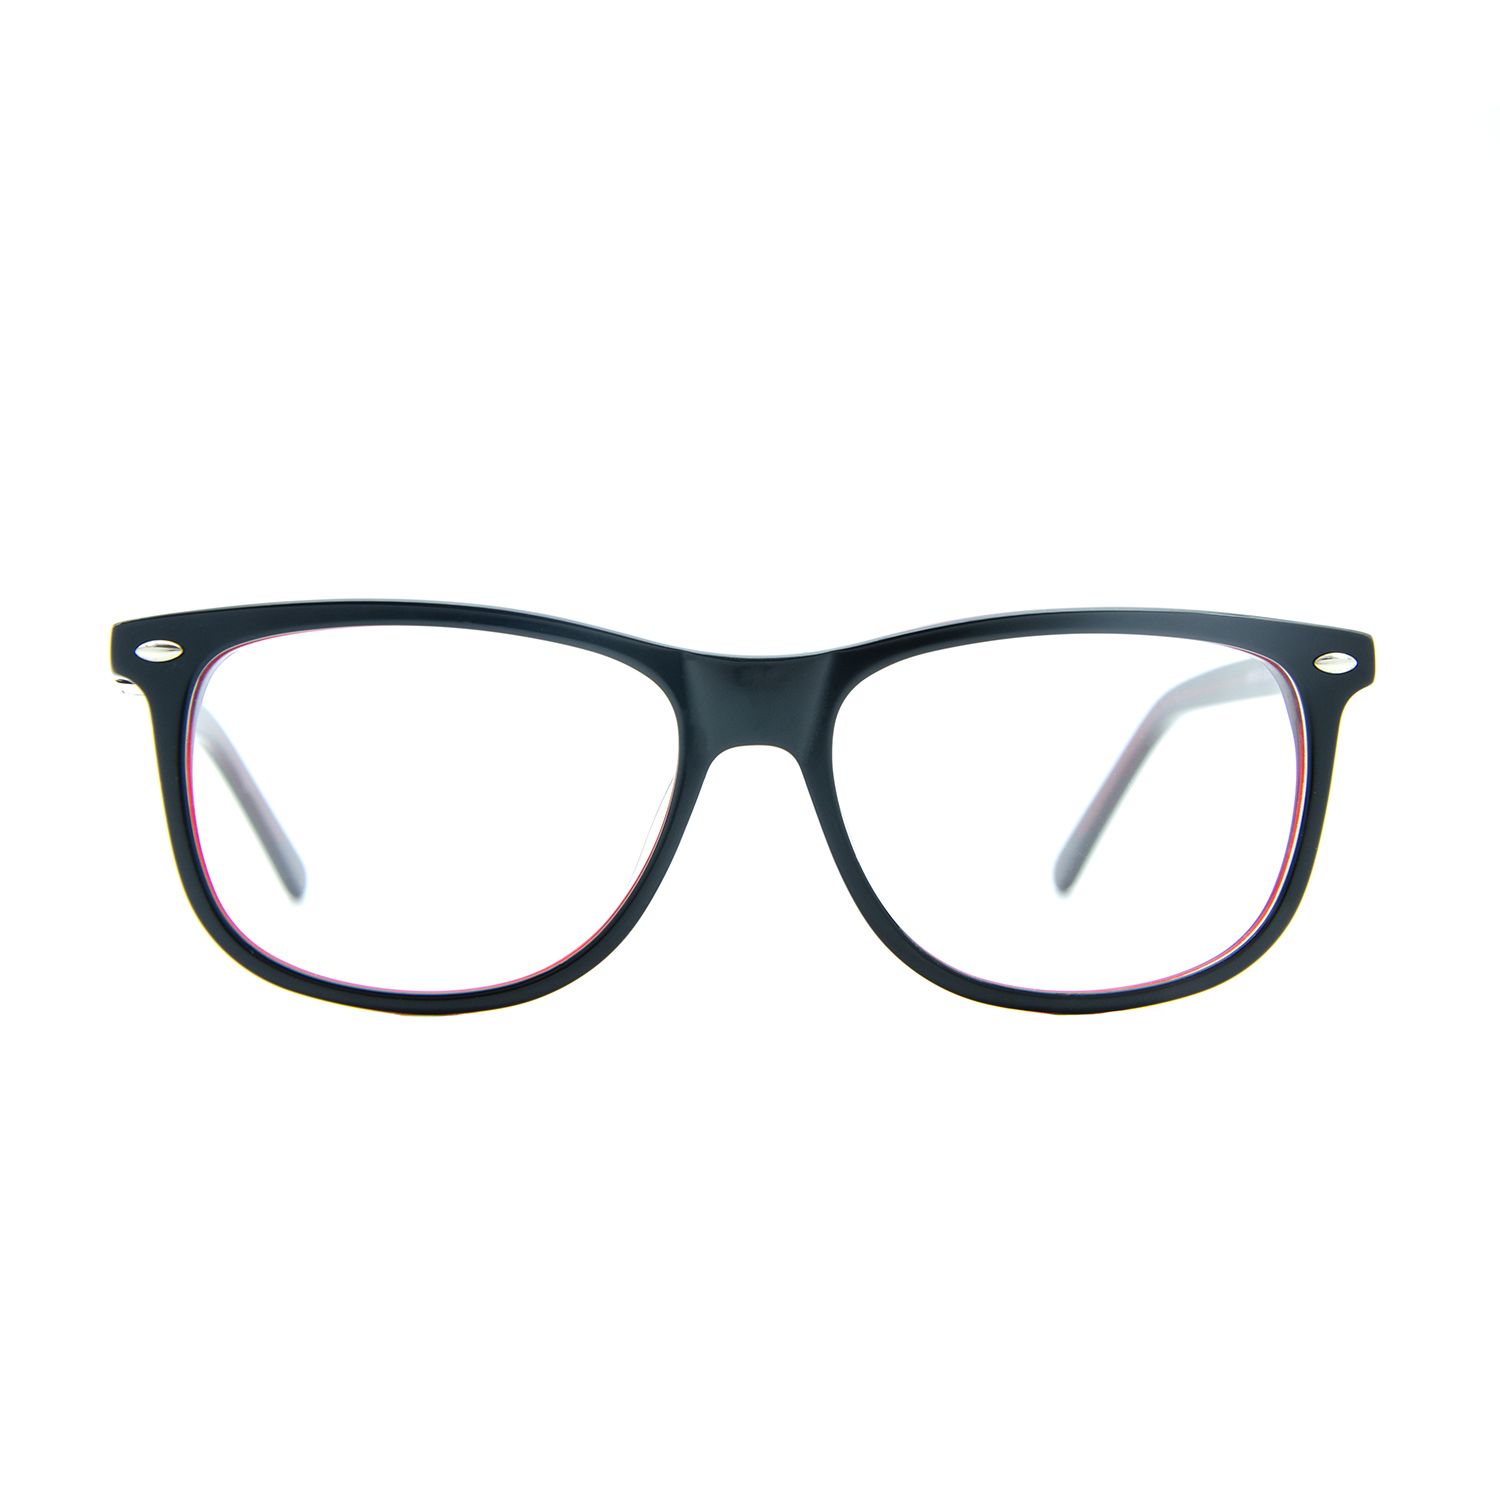 فریم عینک طبی ام اند او مدل Kaia-c1 -  - 2